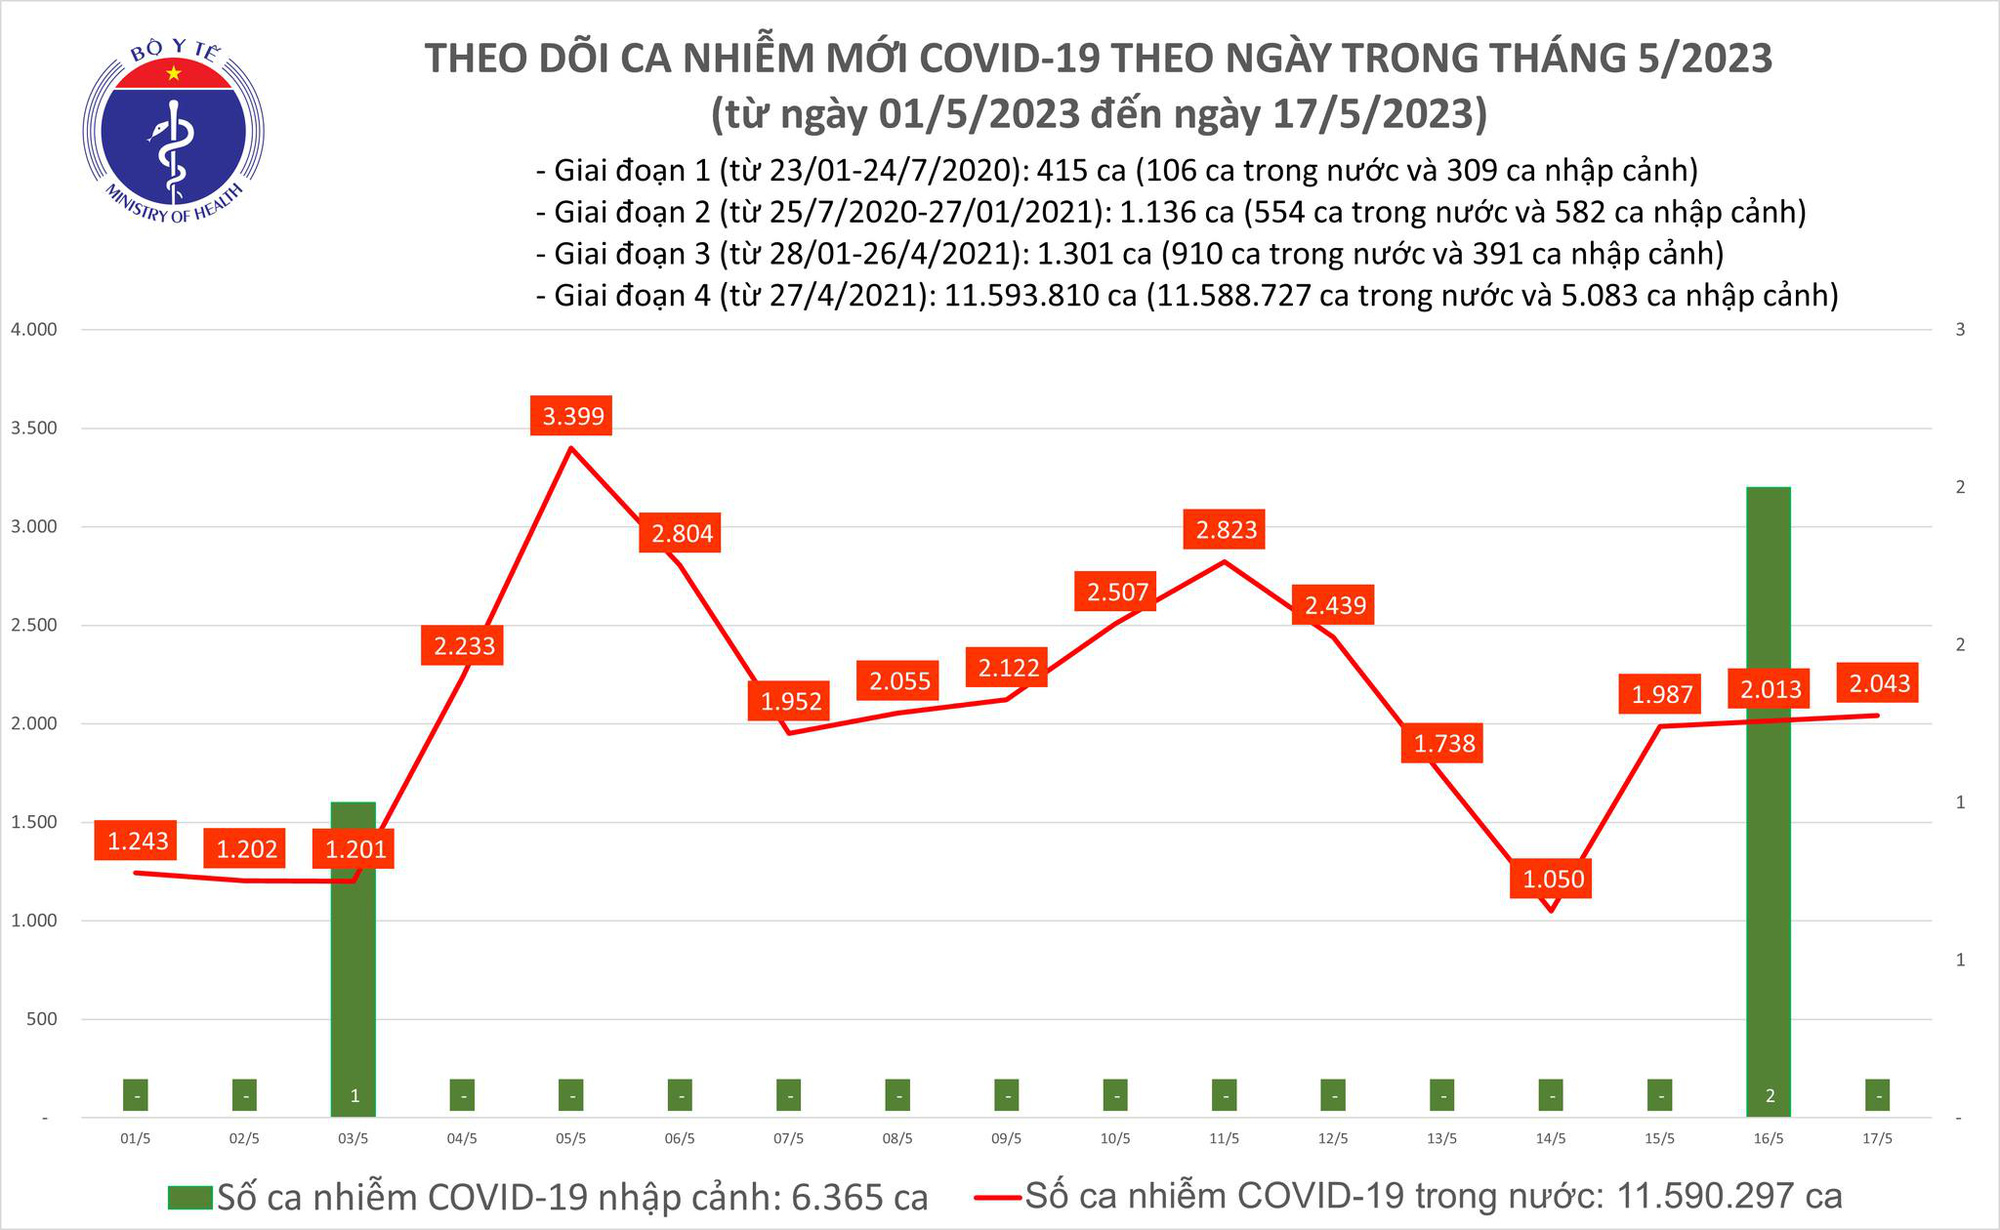 Cả nước ghi nhận 2.043 ca mắc COVID-19 trong ngày 17/5 - Ảnh 2.